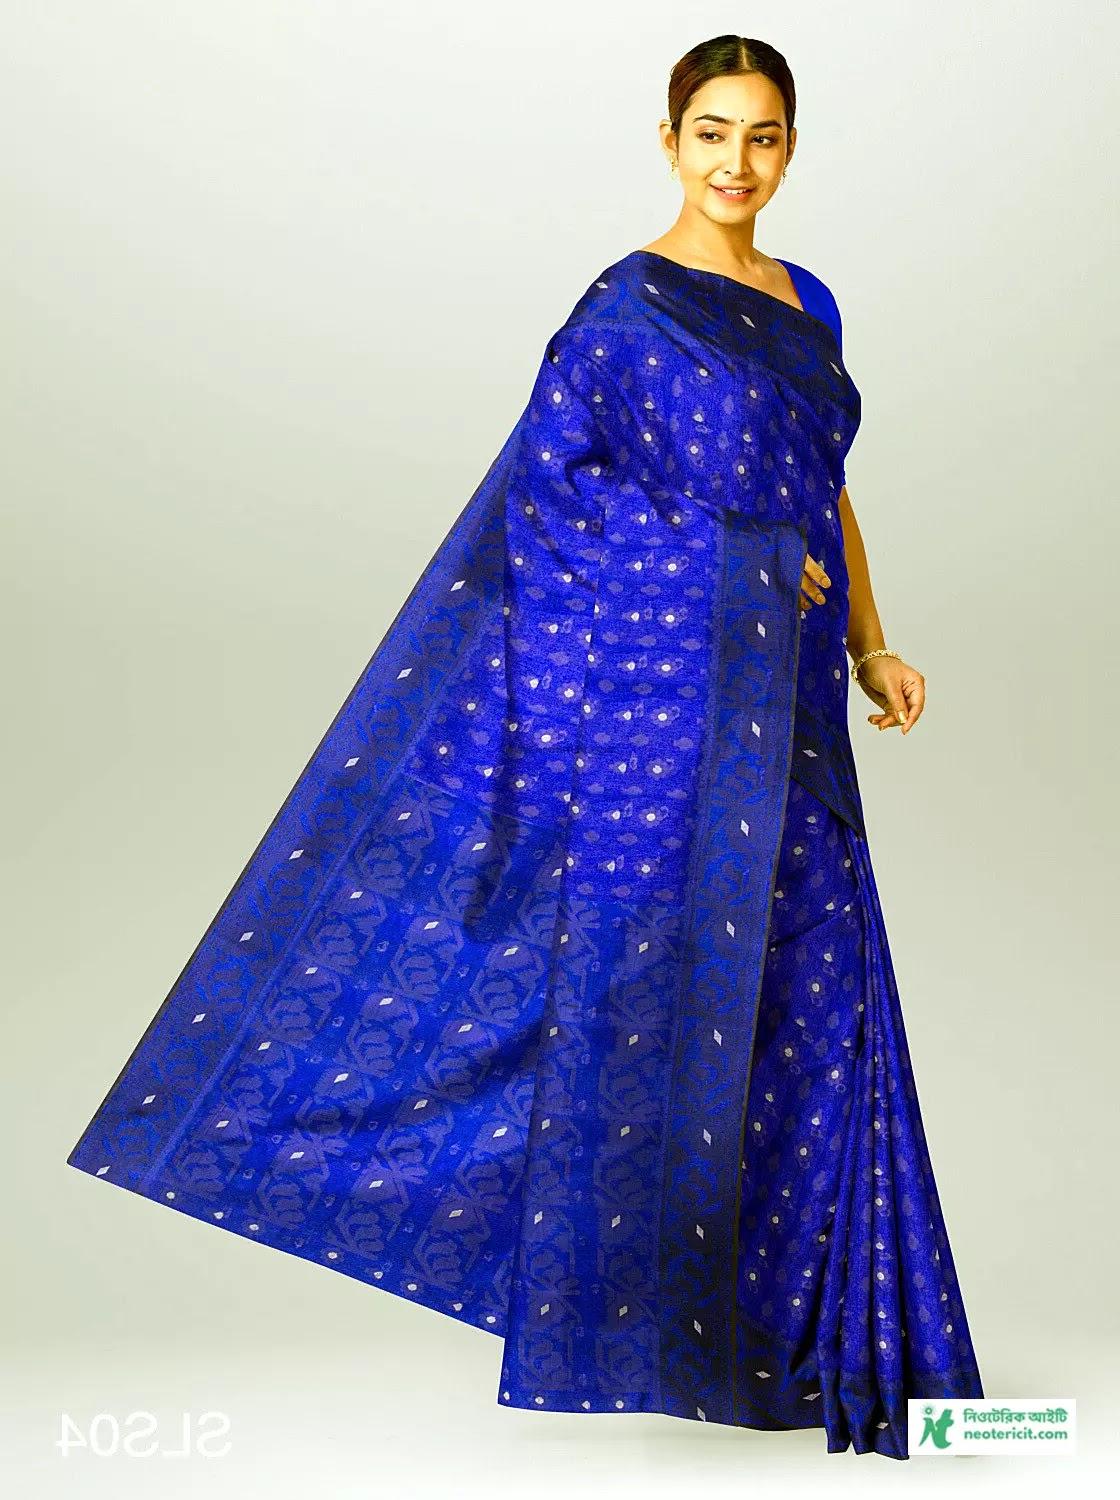 Blue Saree Designs - Blue Saree Pics, Photos, Pictures - Blue Saree Designs & Prices - blue saree pic - NeotericIT.com - Image no 13